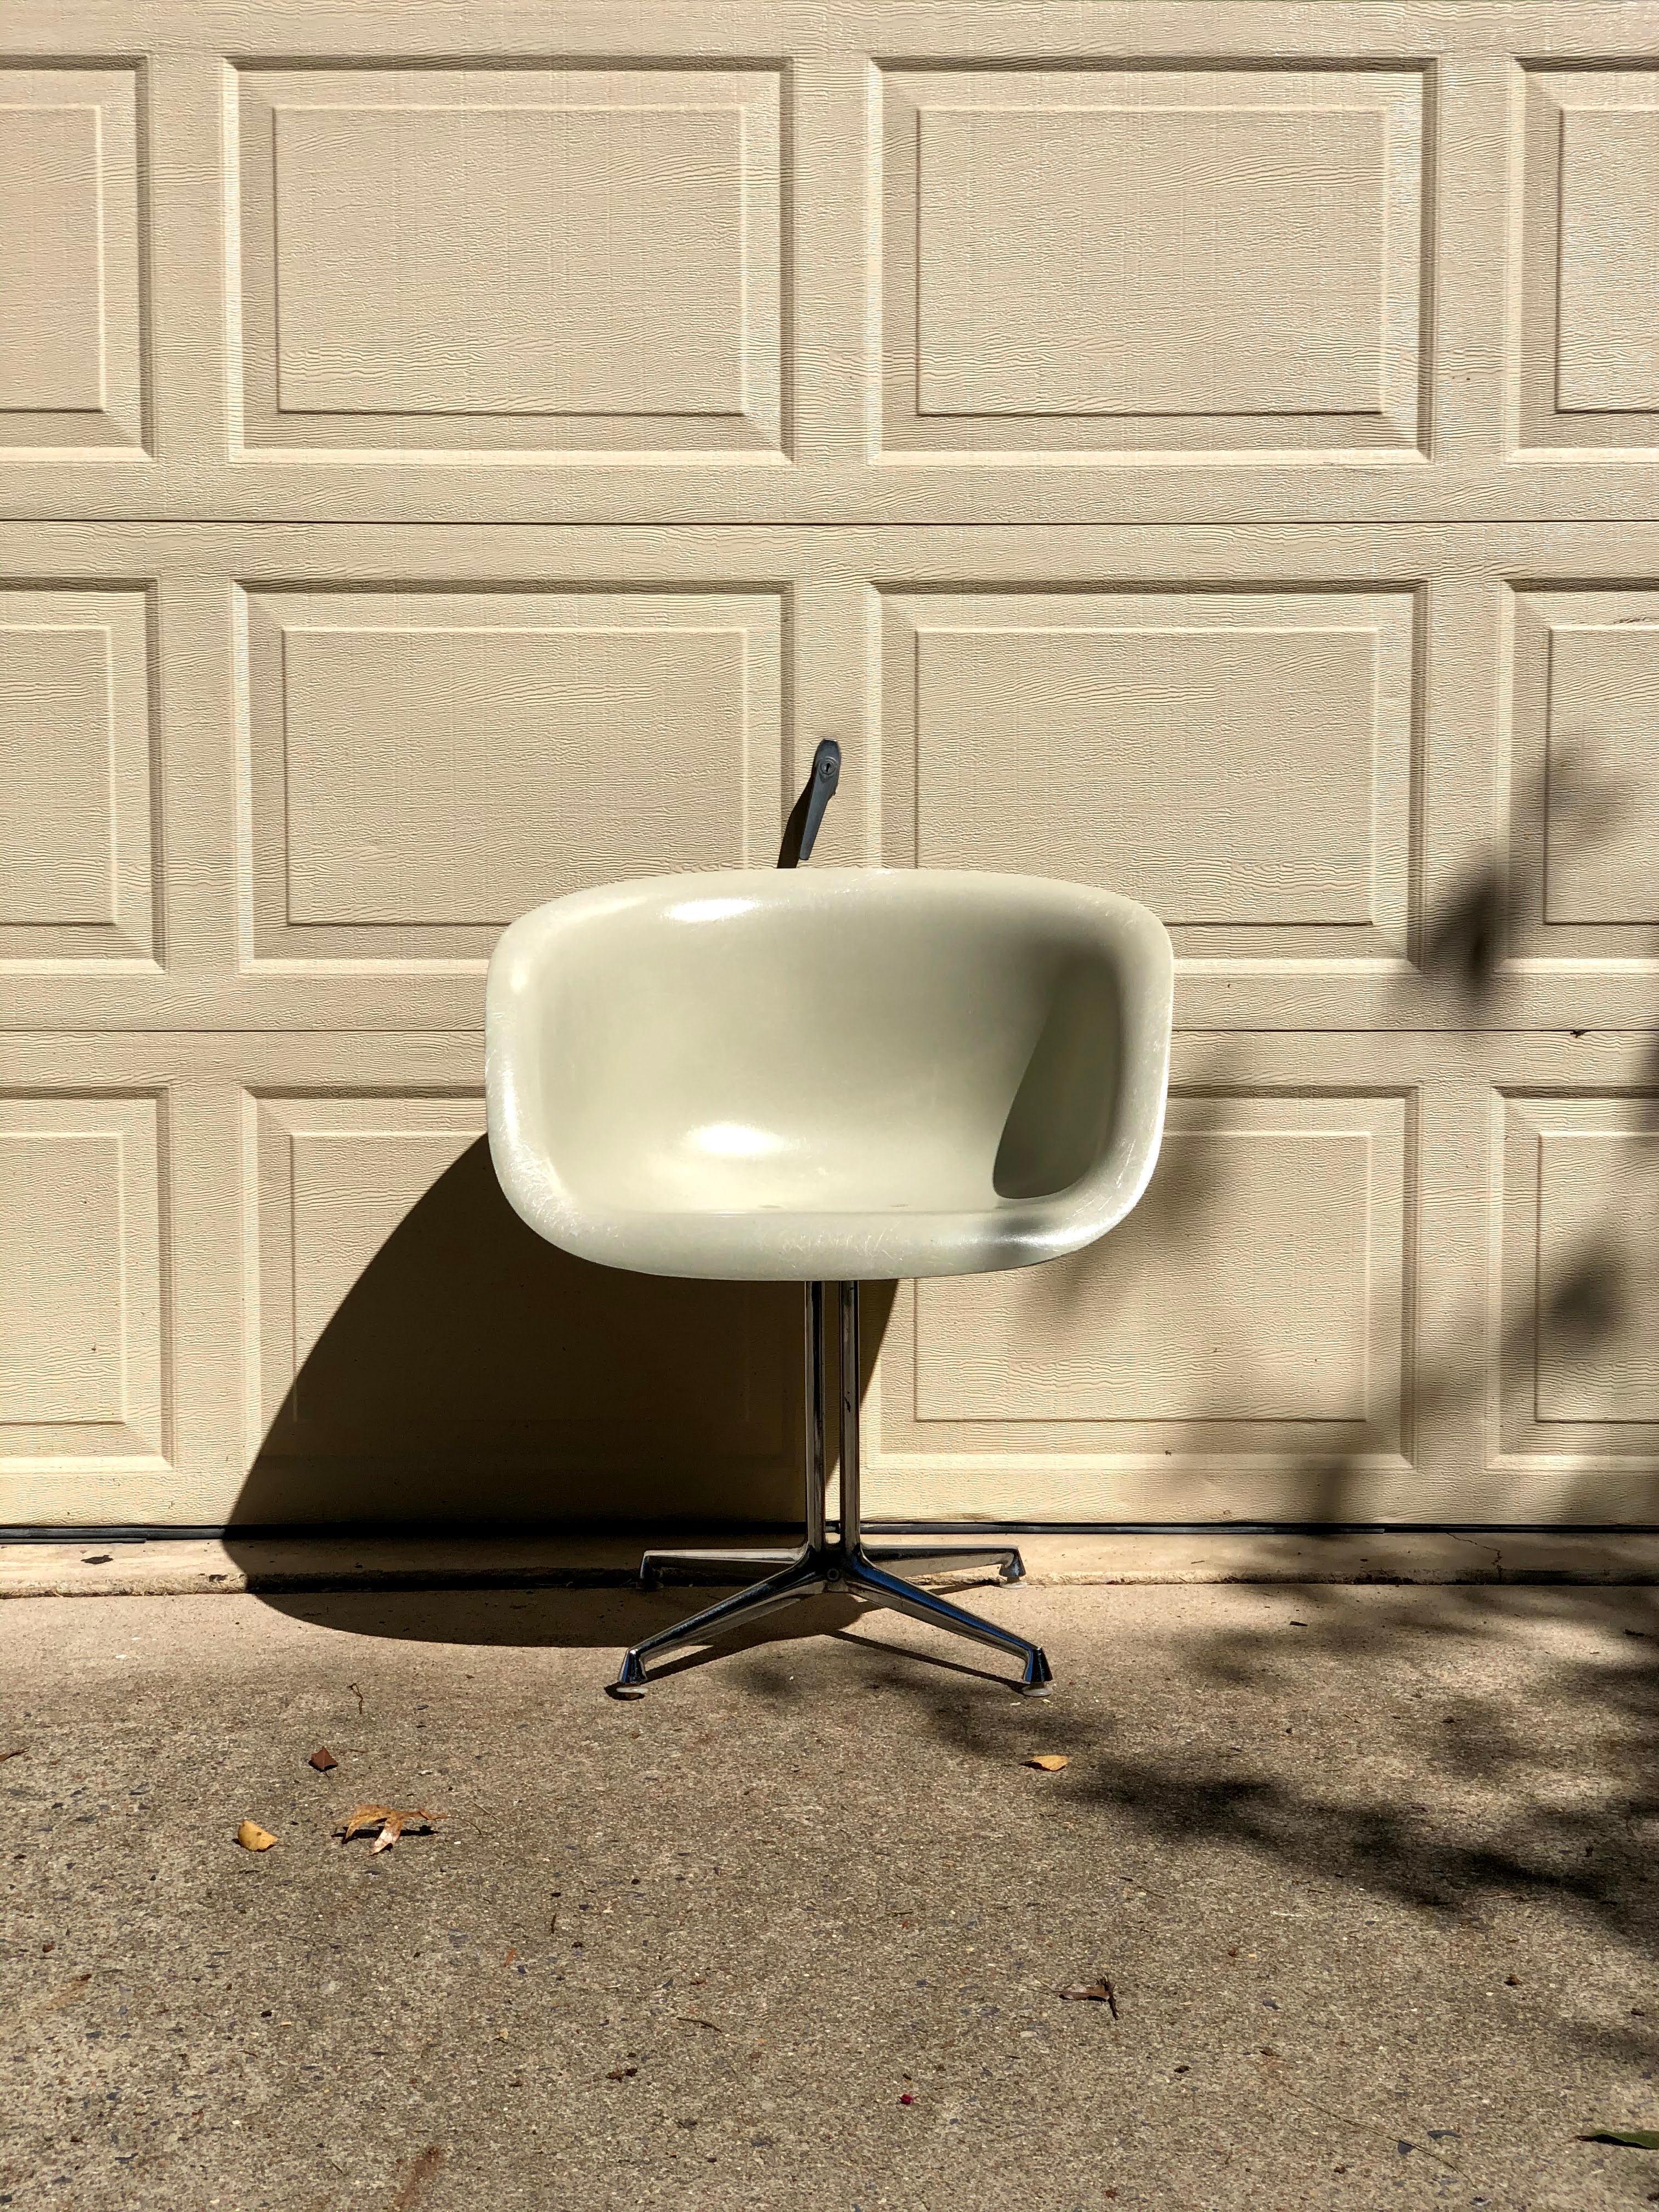 Dieser Sessel ist einer von zwei neuen Fiberglasstühlen, die Charles und Ray Eames 1961 auf Anfrage von Alexander Girard entwarfen, der Sitzgelegenheiten für sein neues Restaurant La Fonda Del Sol in Manhattan benötigte. Manche Sammler nennen diese